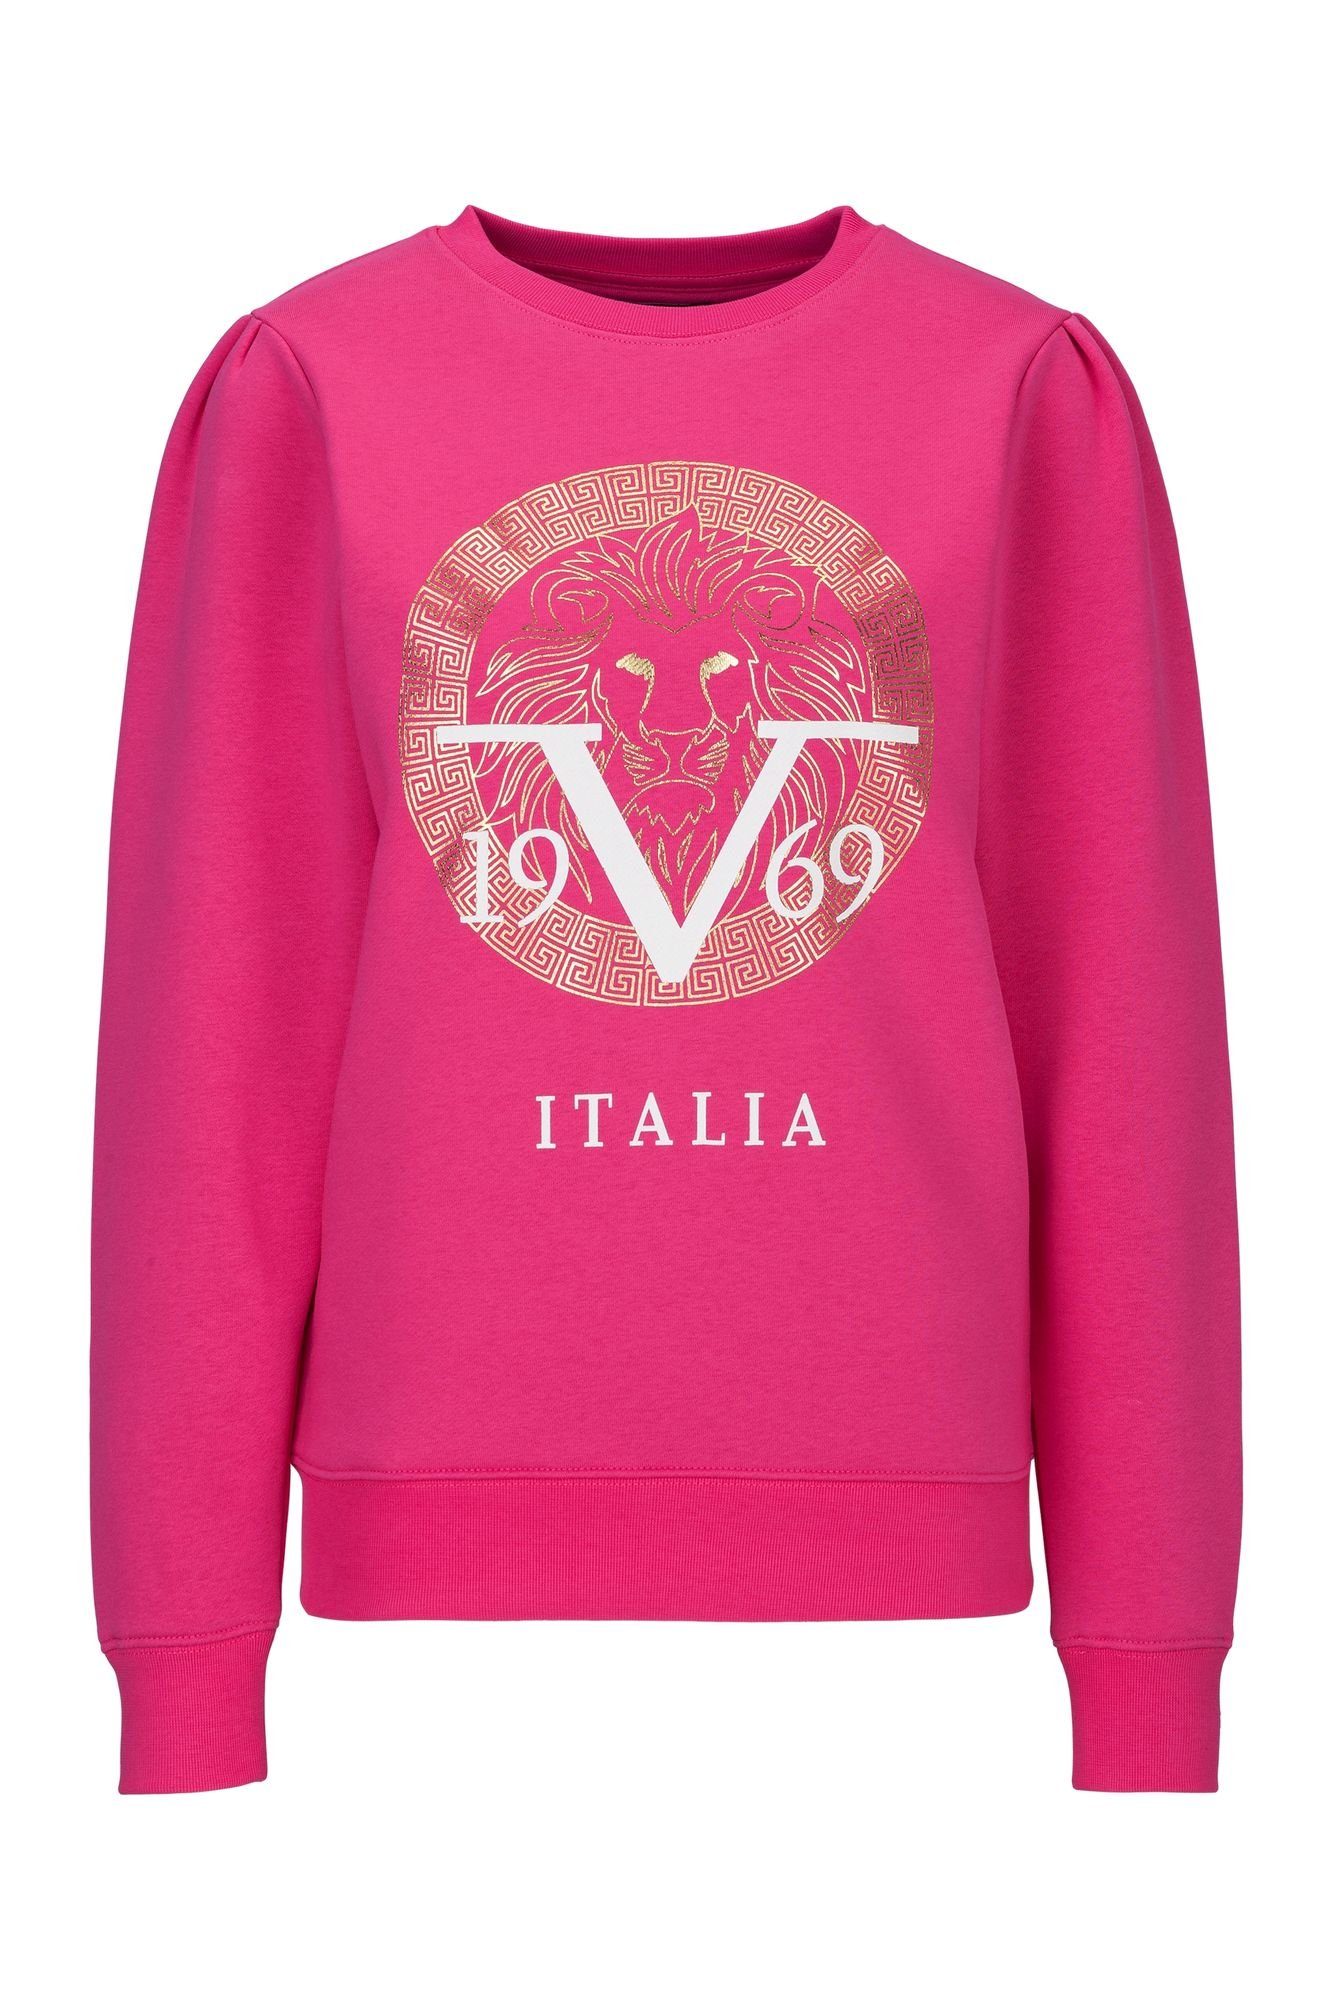 Laden für Originalprodukte 19V69 Italia by Sweatshirt Erika Versace